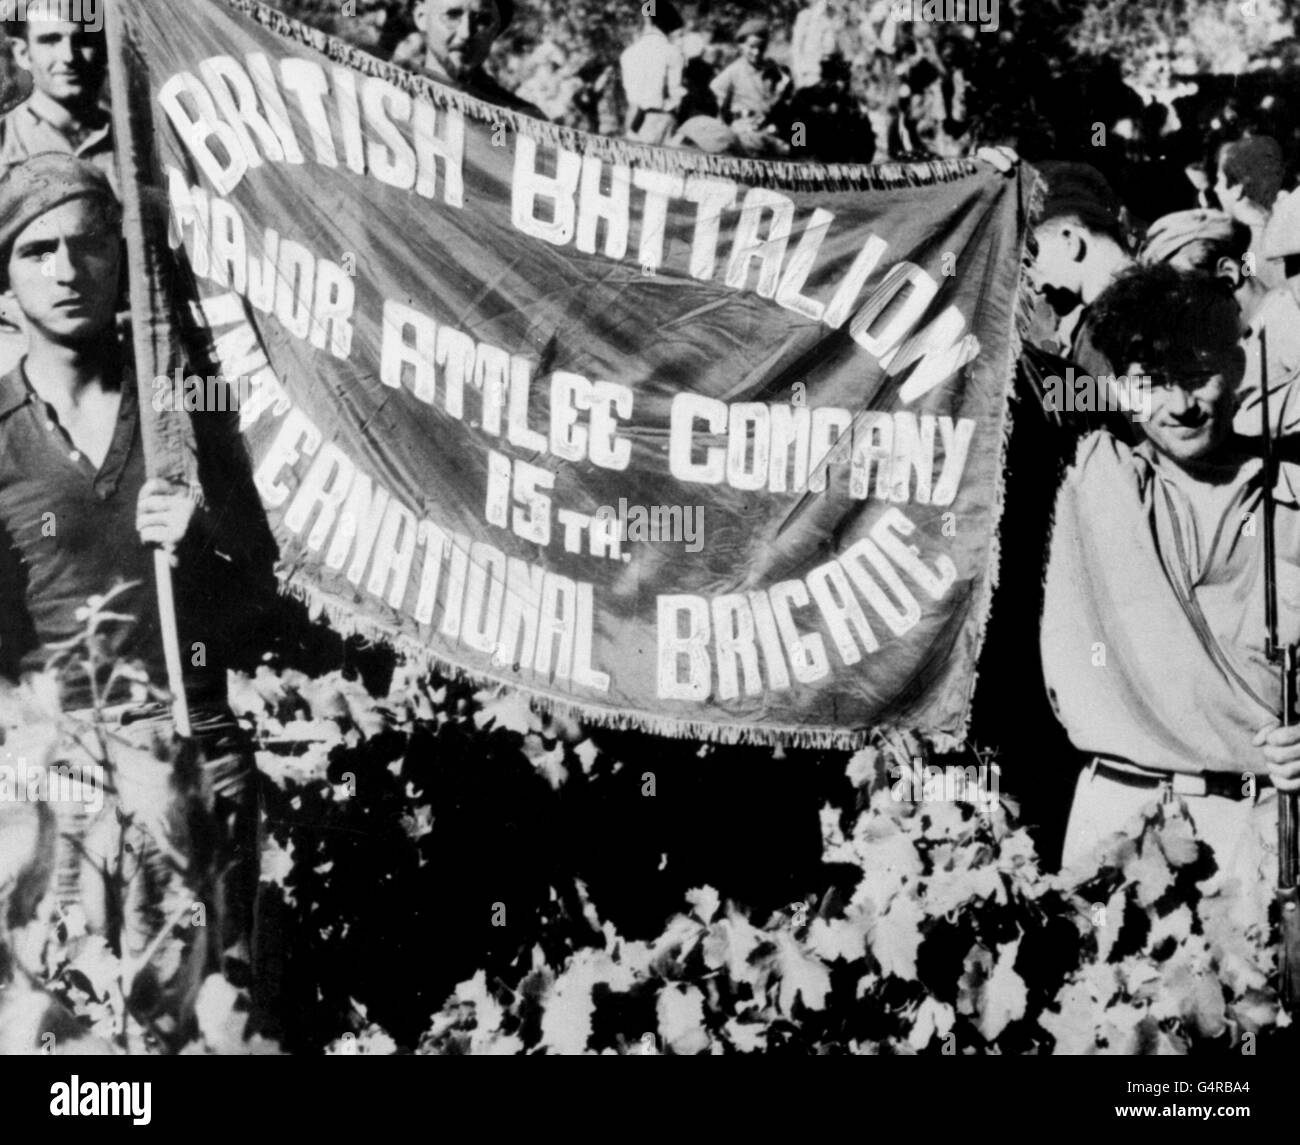 C1936: Mitglieder des Britischen Bataillons, Major Attlee Company, 15. Internationale Brigade, zeigen ihr Banner während einer Waffenruhe während des Spanischen Bürgerkrieges von 1936-1939. Stockfoto